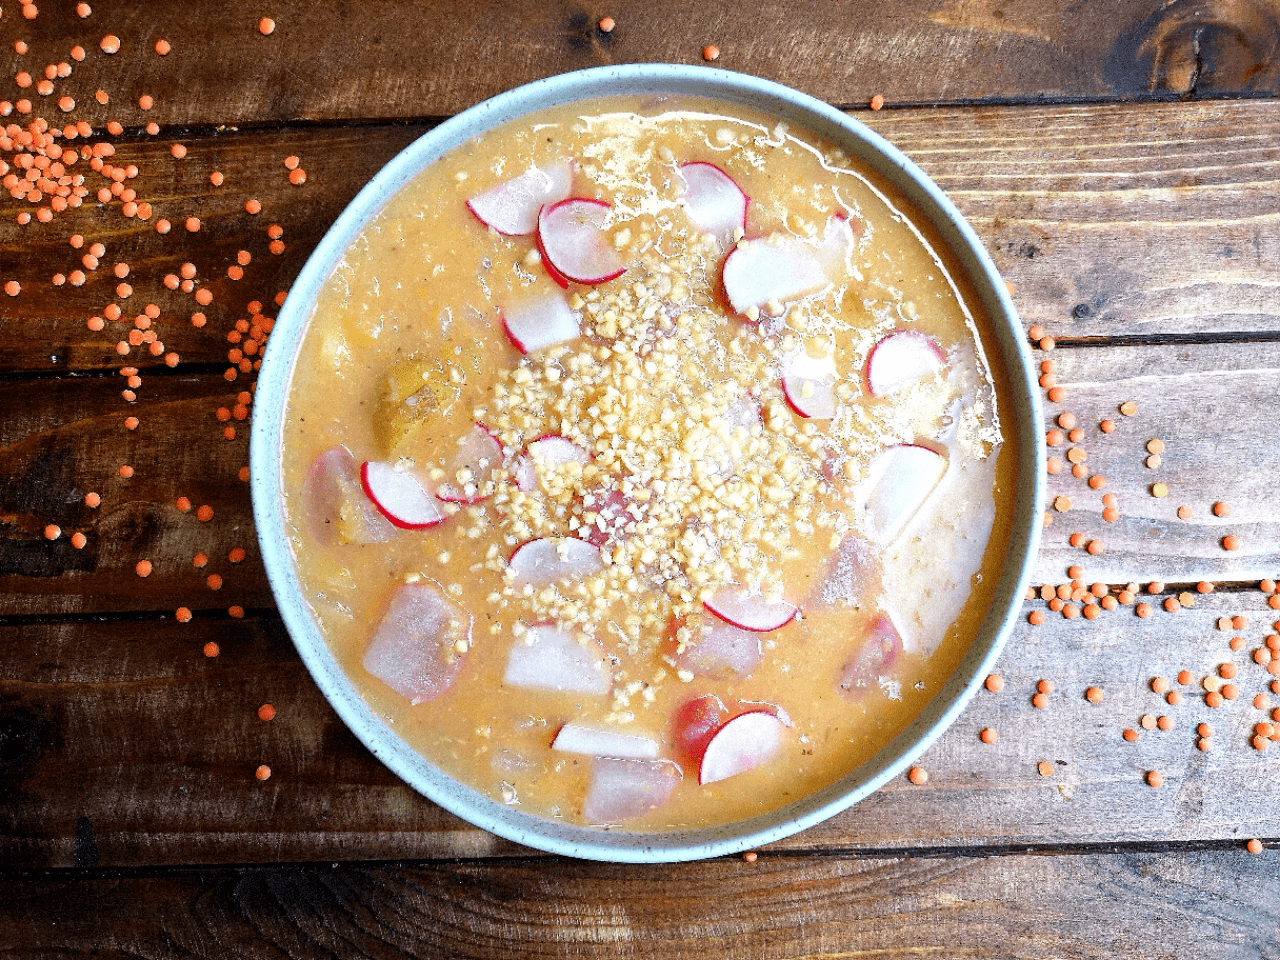  Erfrischende Eleganz trifft auf delikate Würze: Radish Rocket - Die verführerische Kälte von Radieschen-Suppe mit einem Hauch von roten Linsen, ein Geschmackserlebnis, das Ihre Sinne in den Himmel schießt.   